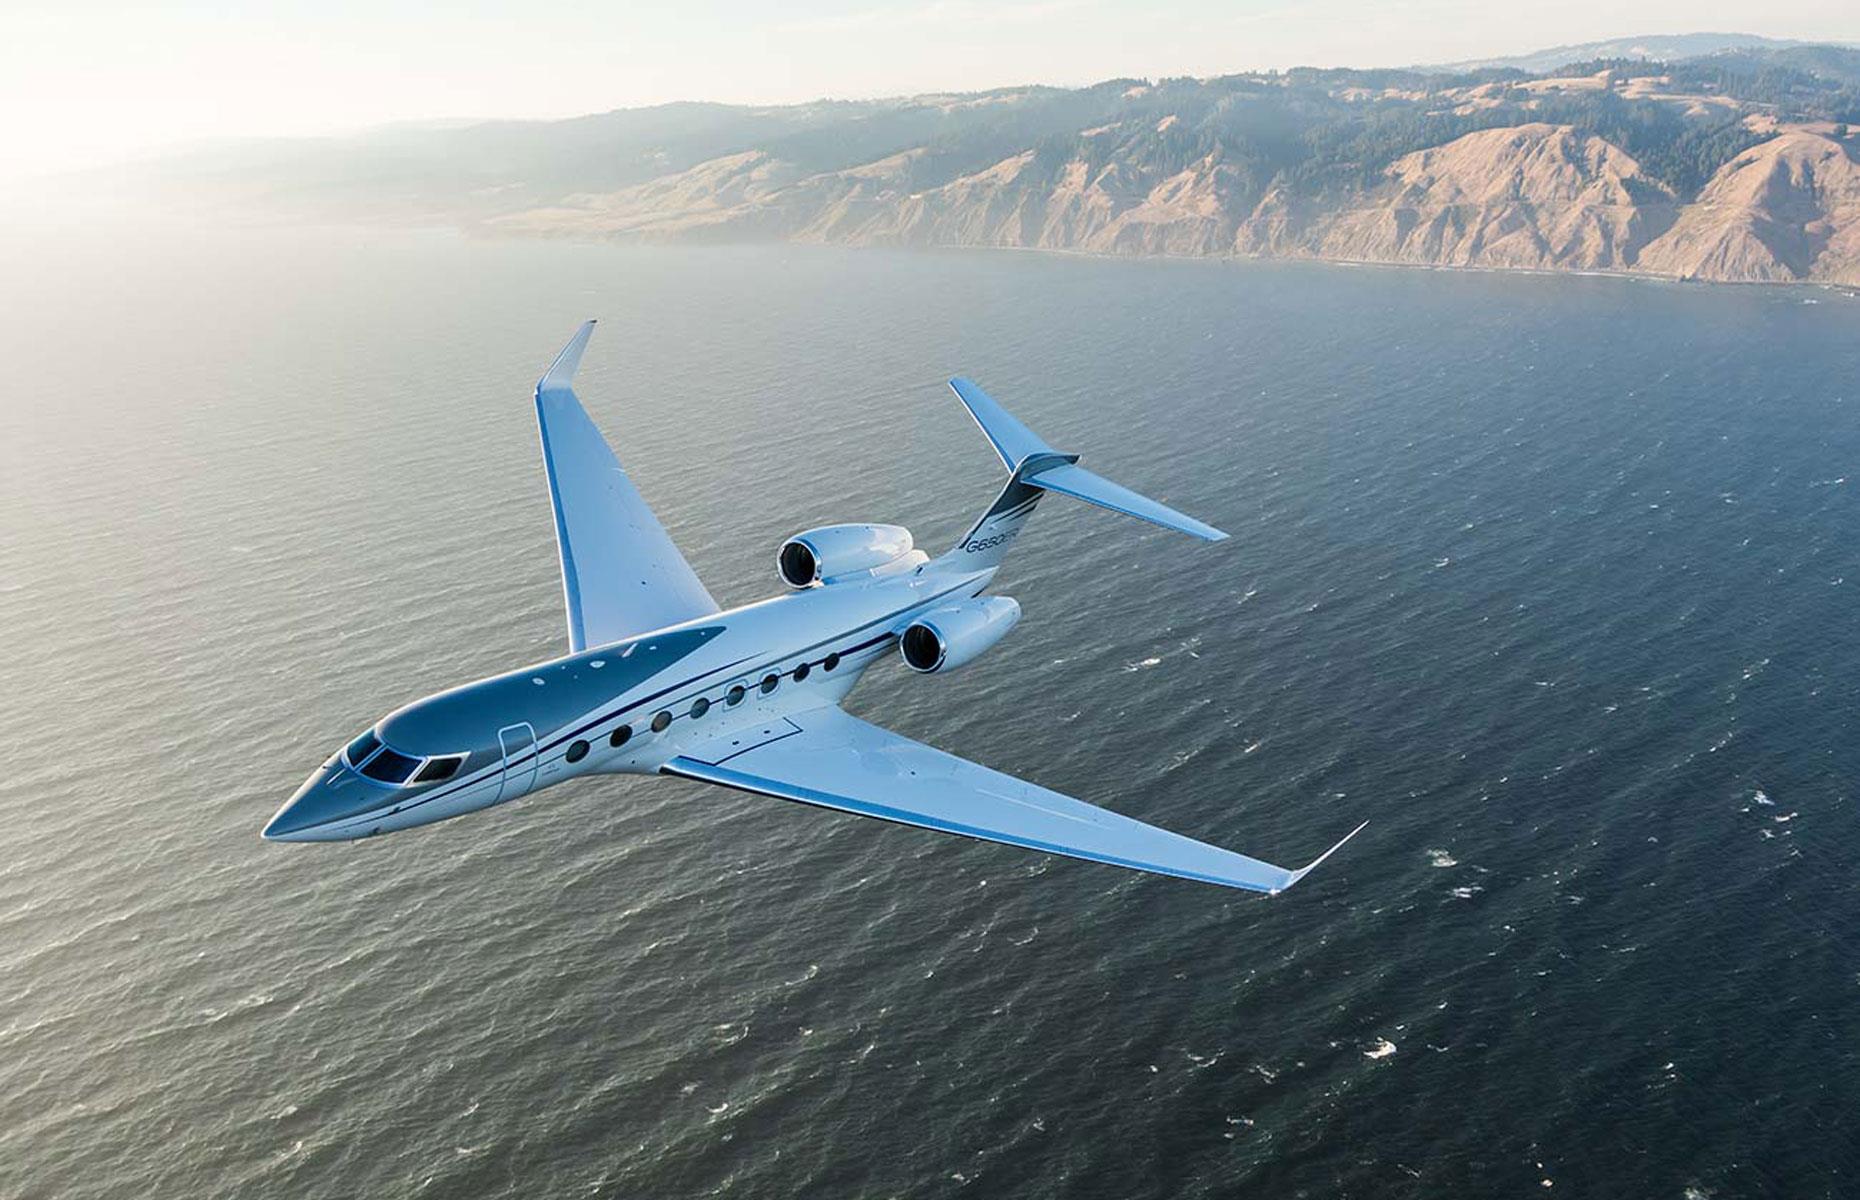 Amazon-Chef Jeff Bezos ist stolzer Besitzer von nicht nur einem, sondern gleich zwei Gulfstream-Privatjets des Typs G650ER. Einen besitzt der Milliardär bereits seit 2015, den anderen seit vergangenem Jahr. Beide Flugzeuge zusammen sind umgerechnet bis zu 134 Millionen Euro wert, was für den reichsten Menschen der Welt lediglich Kleingeld ist. Der Gulfstream G650ER ist beliebt bei Milliardären. Auch Larry Ellison und Elon Musk haben den Jet in ihrer Flugzeugsammlung.